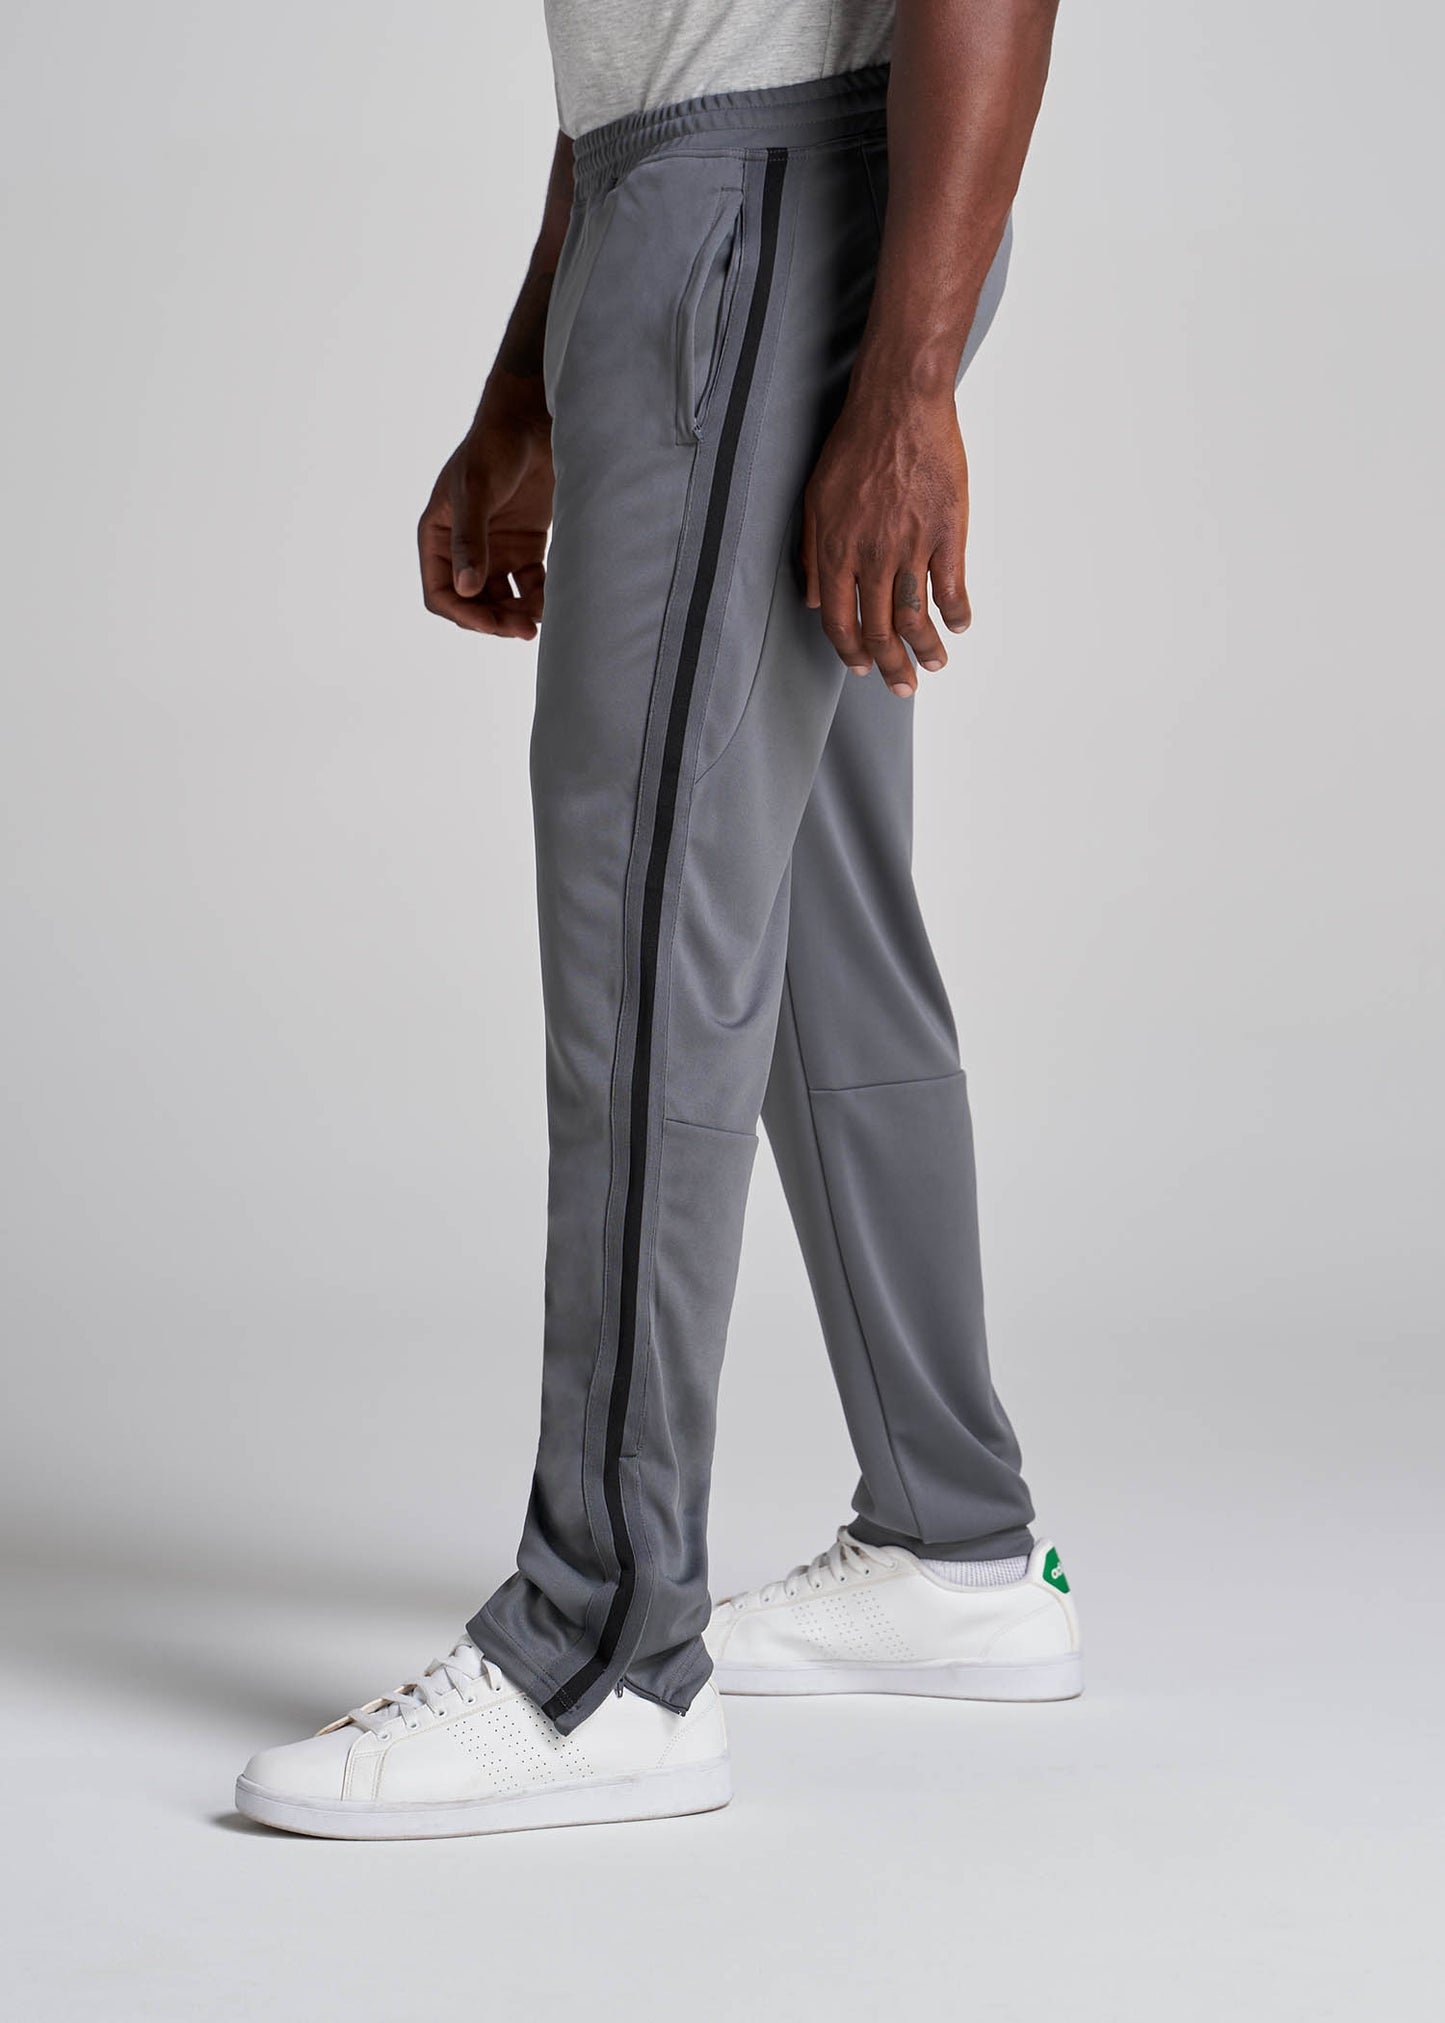 Athletic Stripe Pants for Tall Men in Grey-Black Stripe